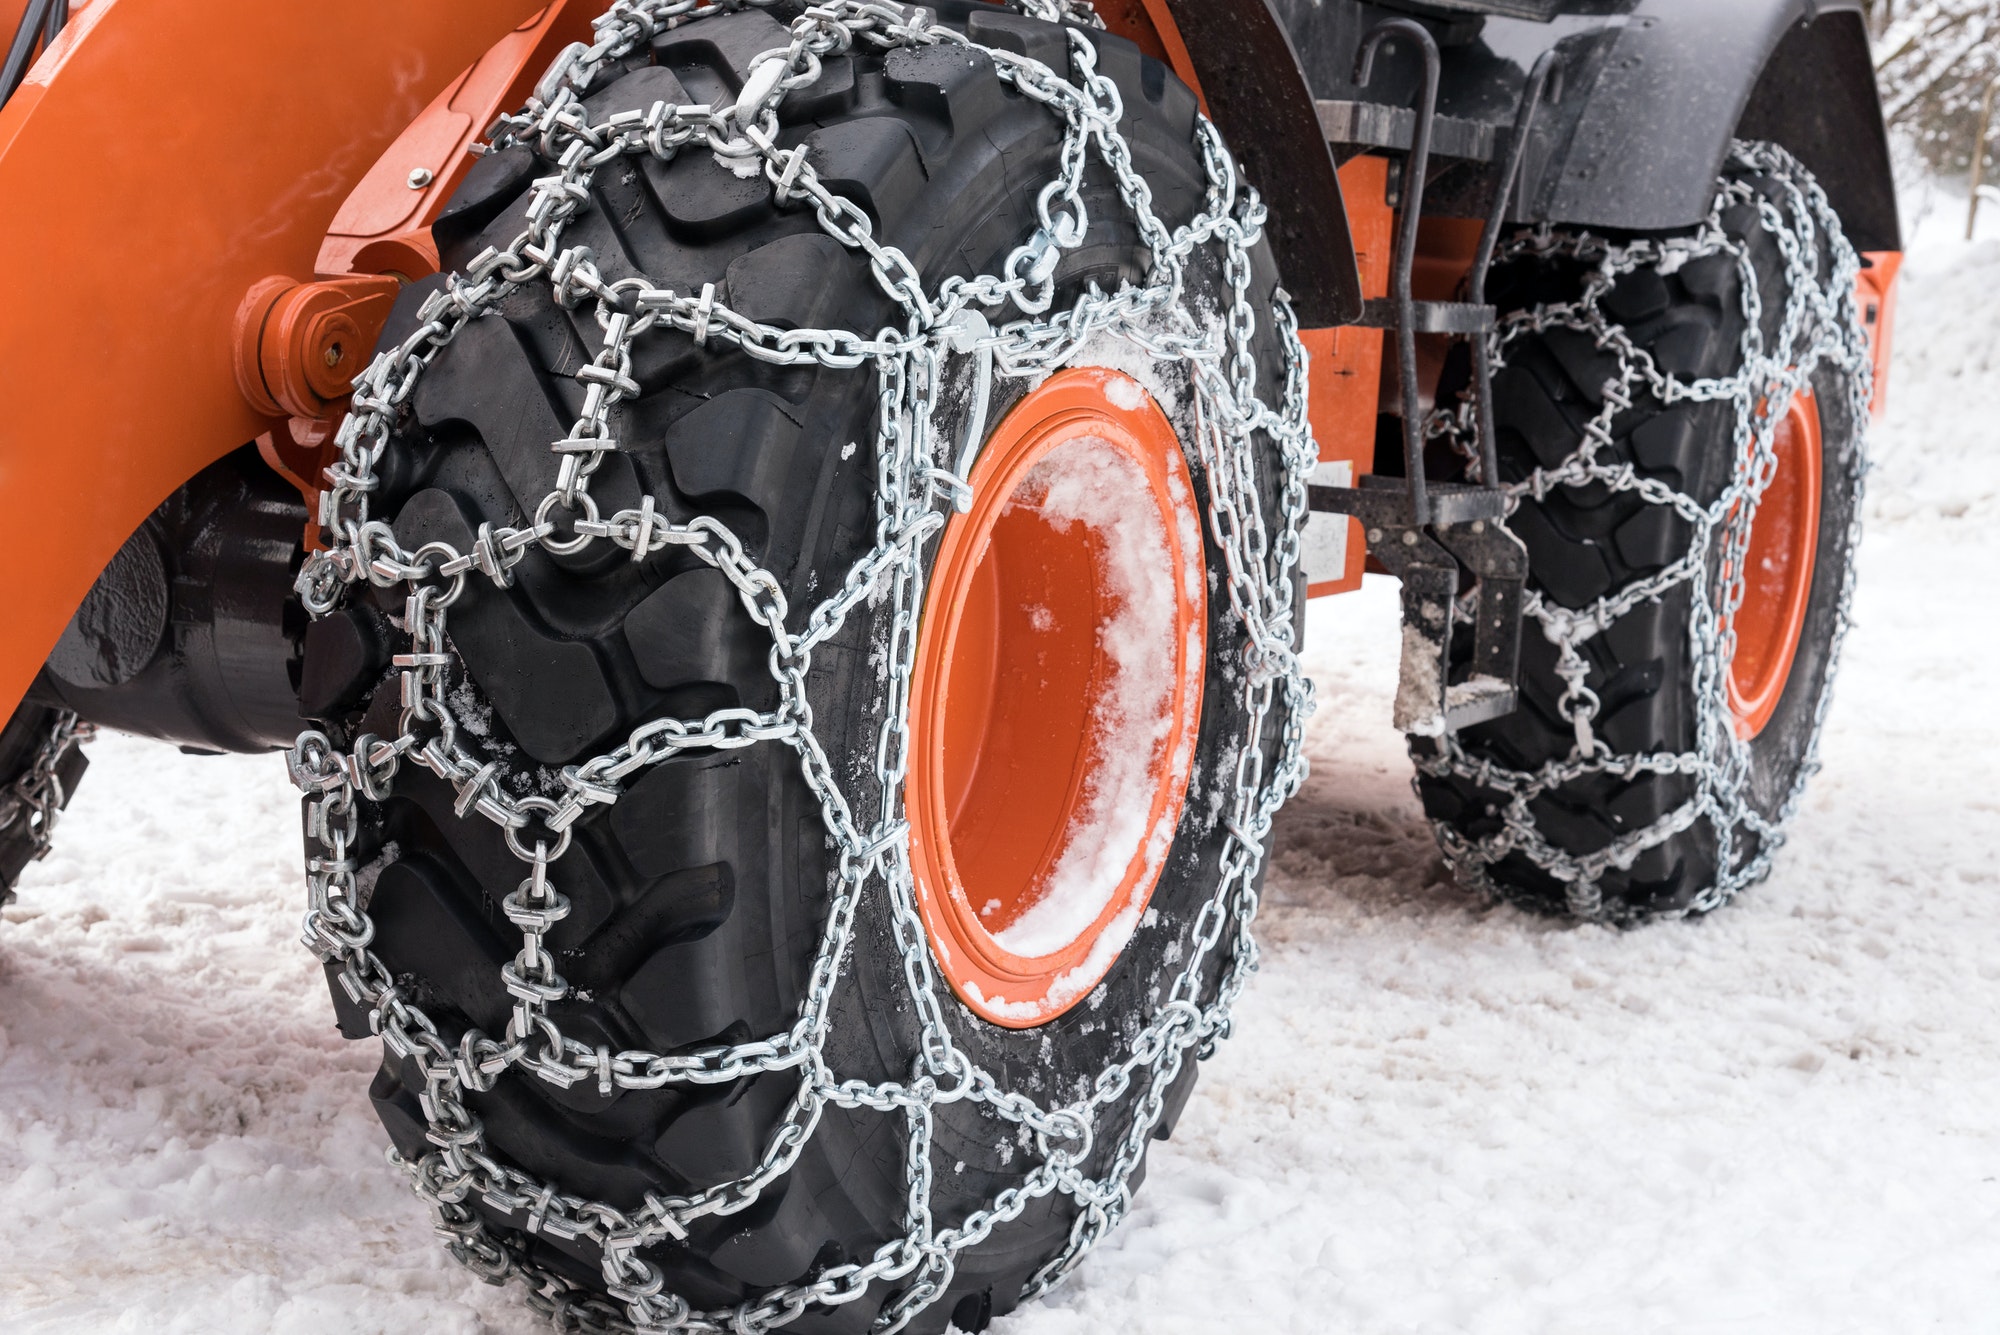 Les pneus hiver offrent une meilleure traction sur sol enneigé, mouillé et  verglacé